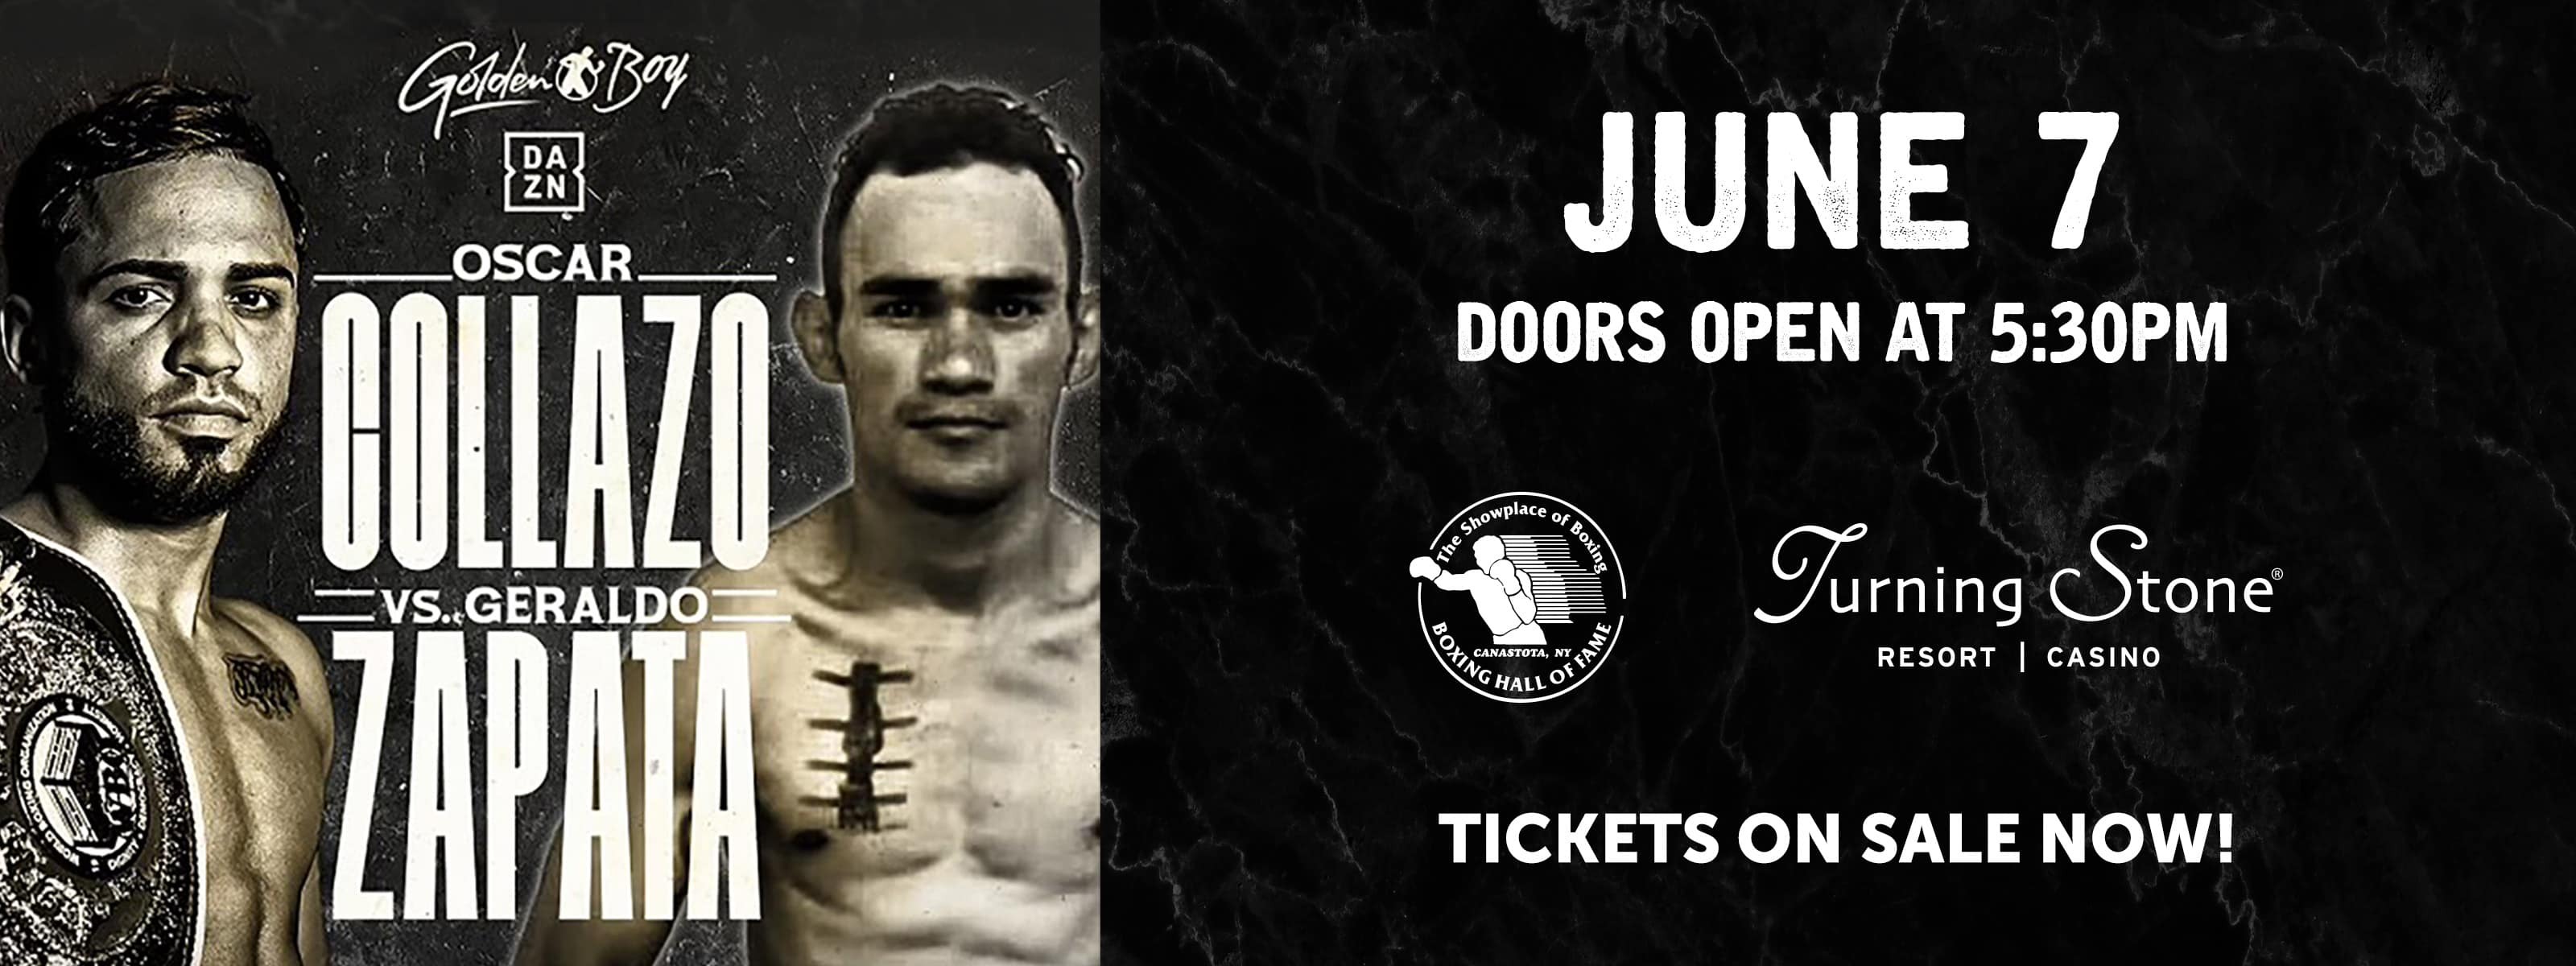 Golden Boy Boxing Oscar Collazo vs Geraldo Zapata June 7 tickets on sale now